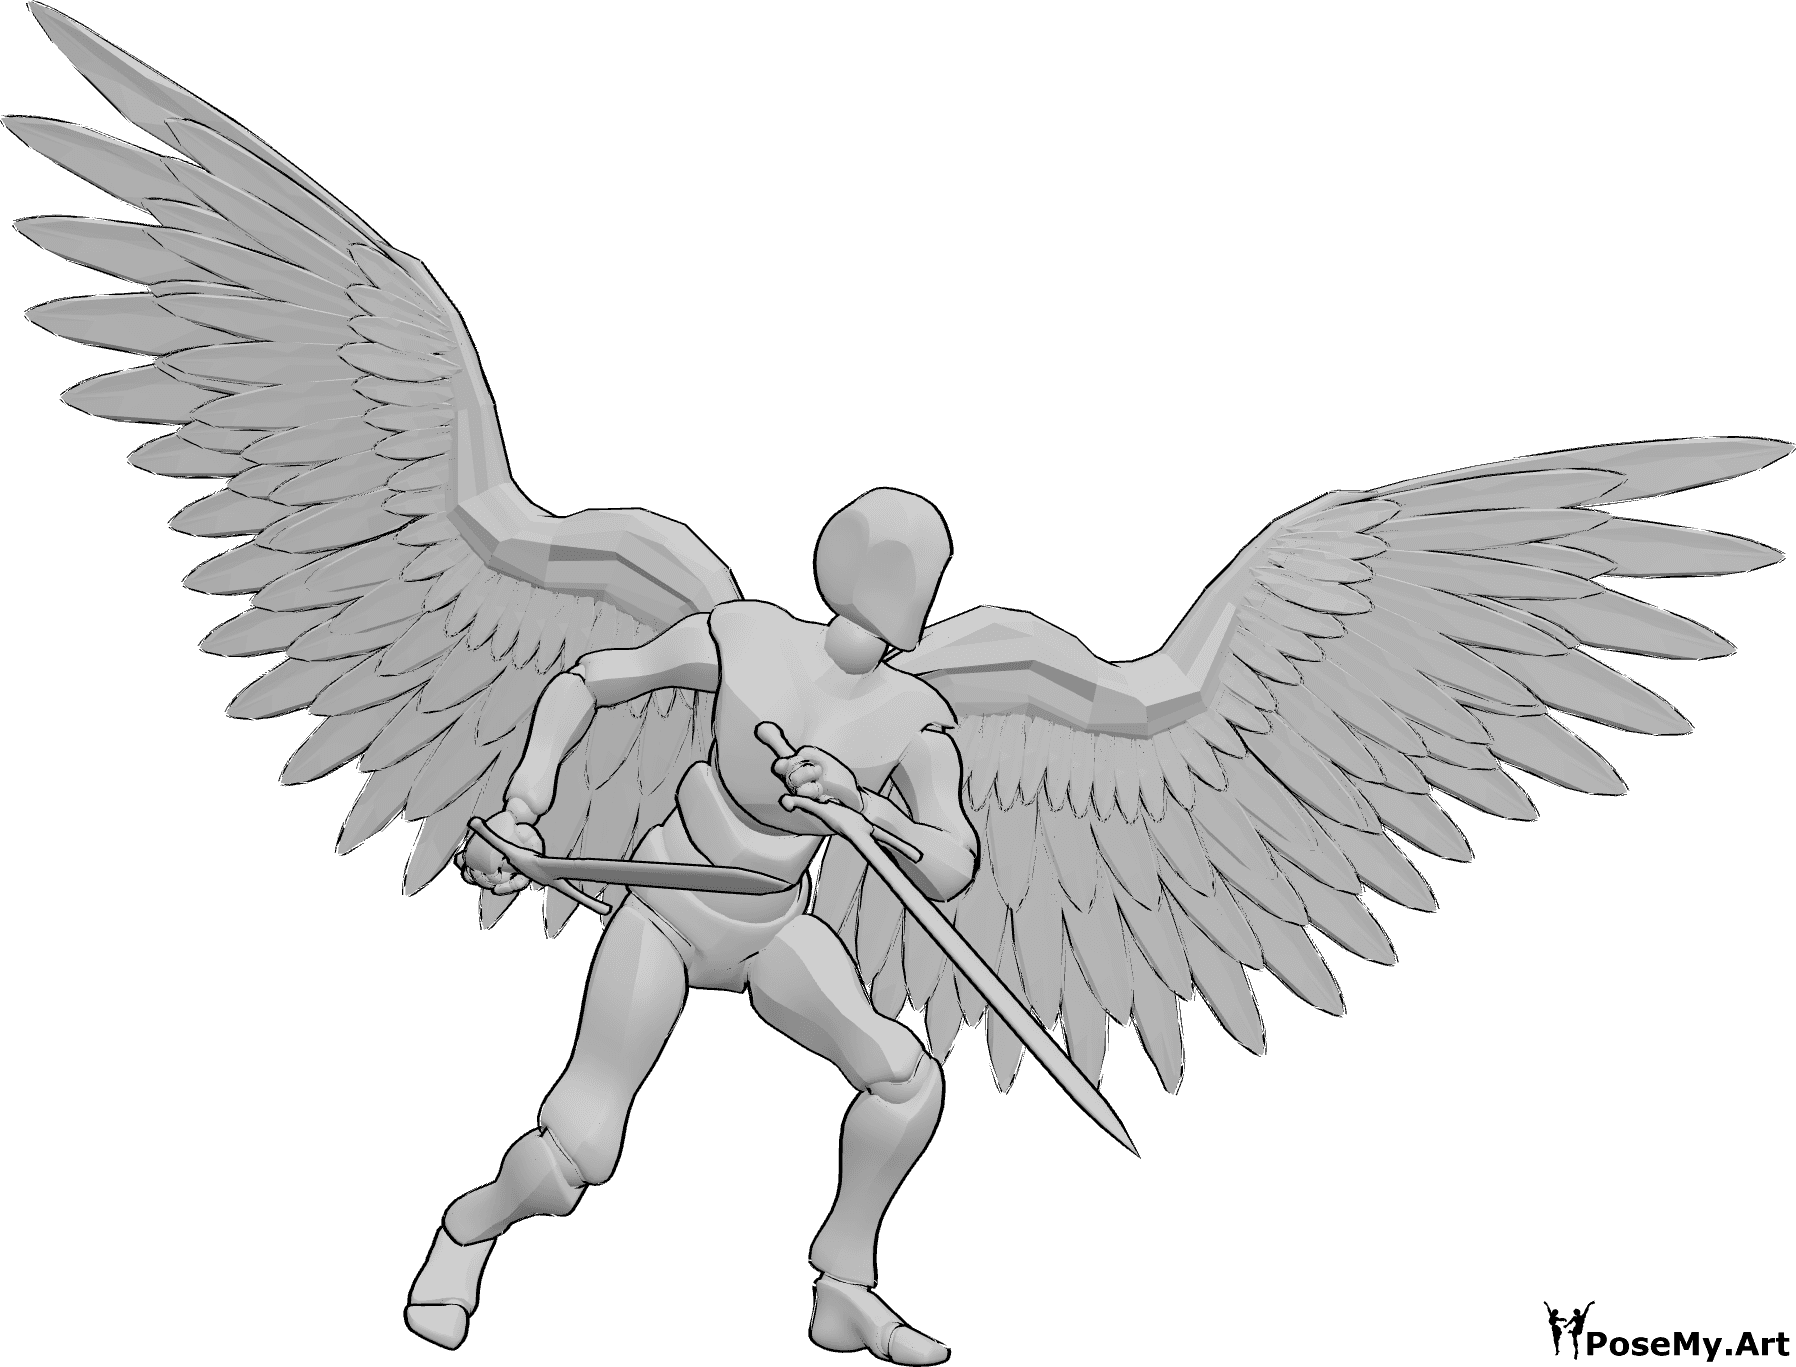 Referencia de poses- Postura de ángel masculino con espadas - El ángel masculino está de pie y sostiene dos grandes espadas, listo para luchar pose